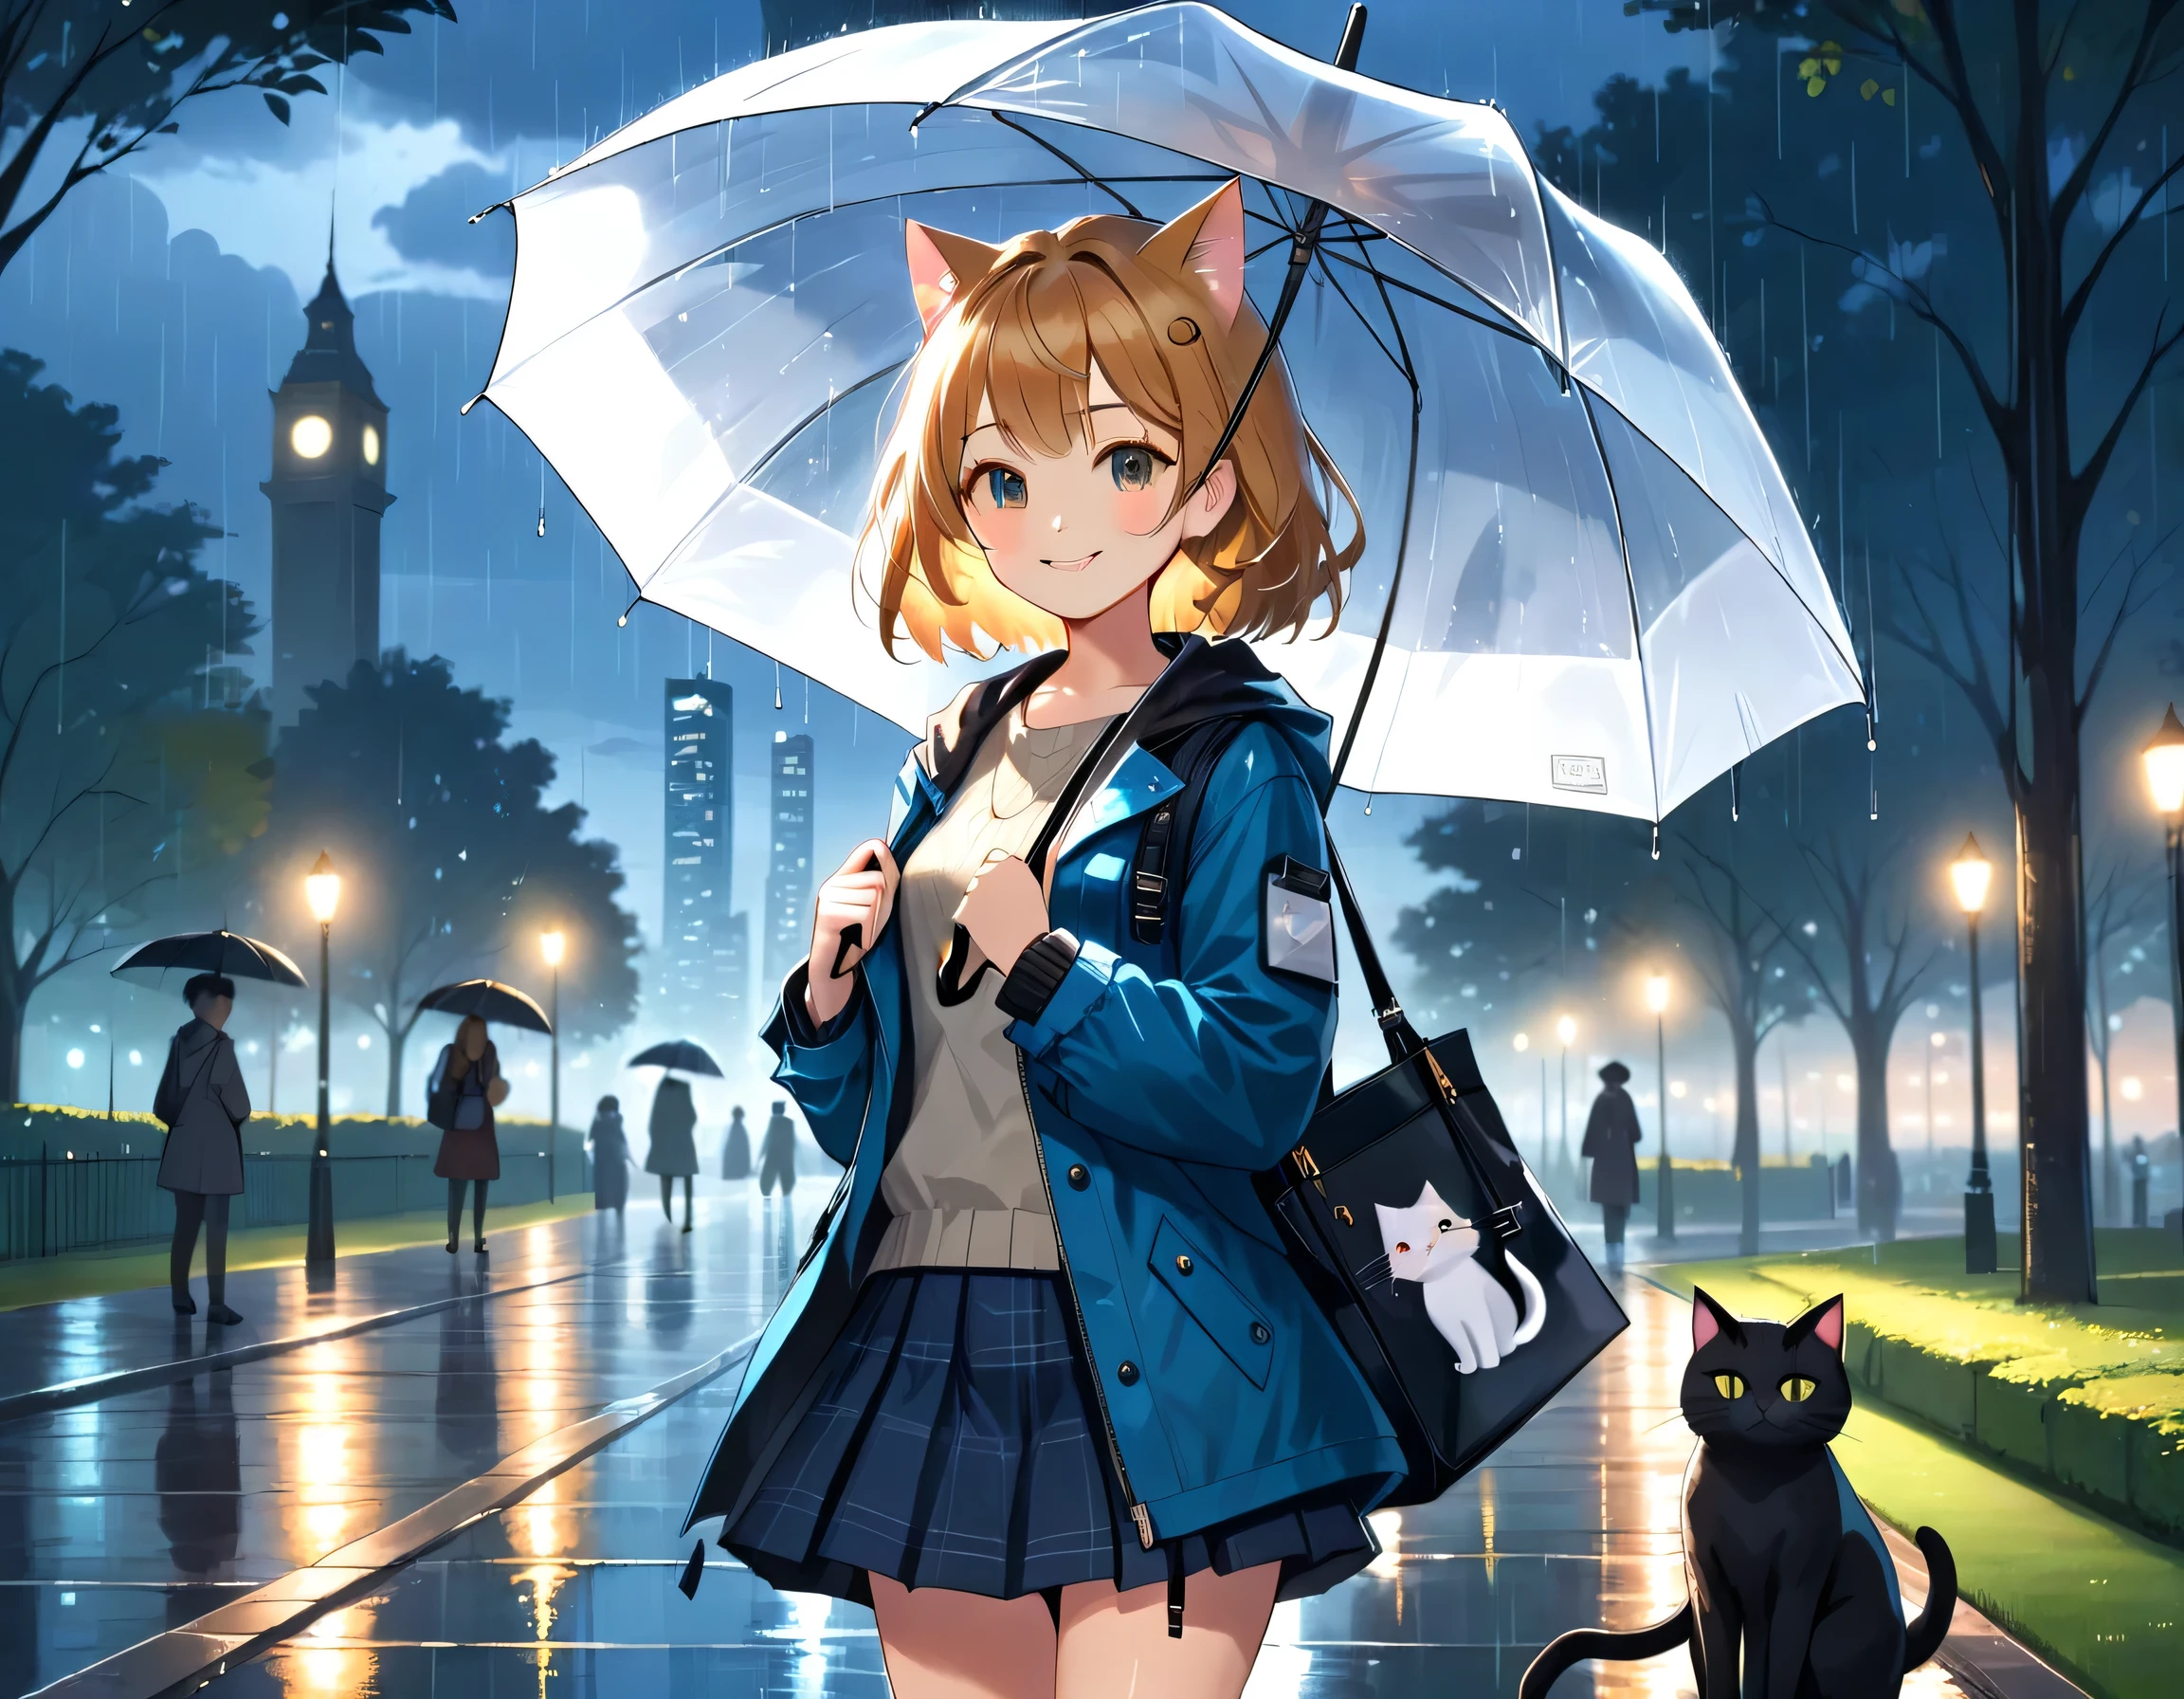 (Obra de arte, melhor qualidade, 8K), 
Ilustração de uma menina e um gato em um parque, está chovendo e ela está segurando um guarda-chuva, noite escura, luz difusa da cidade brilhando, jaqueta, mini-saia, Bolsa de ombro, segurando um guarda-chuva para um gato, sorridente, gatos com desenhos detalhados.